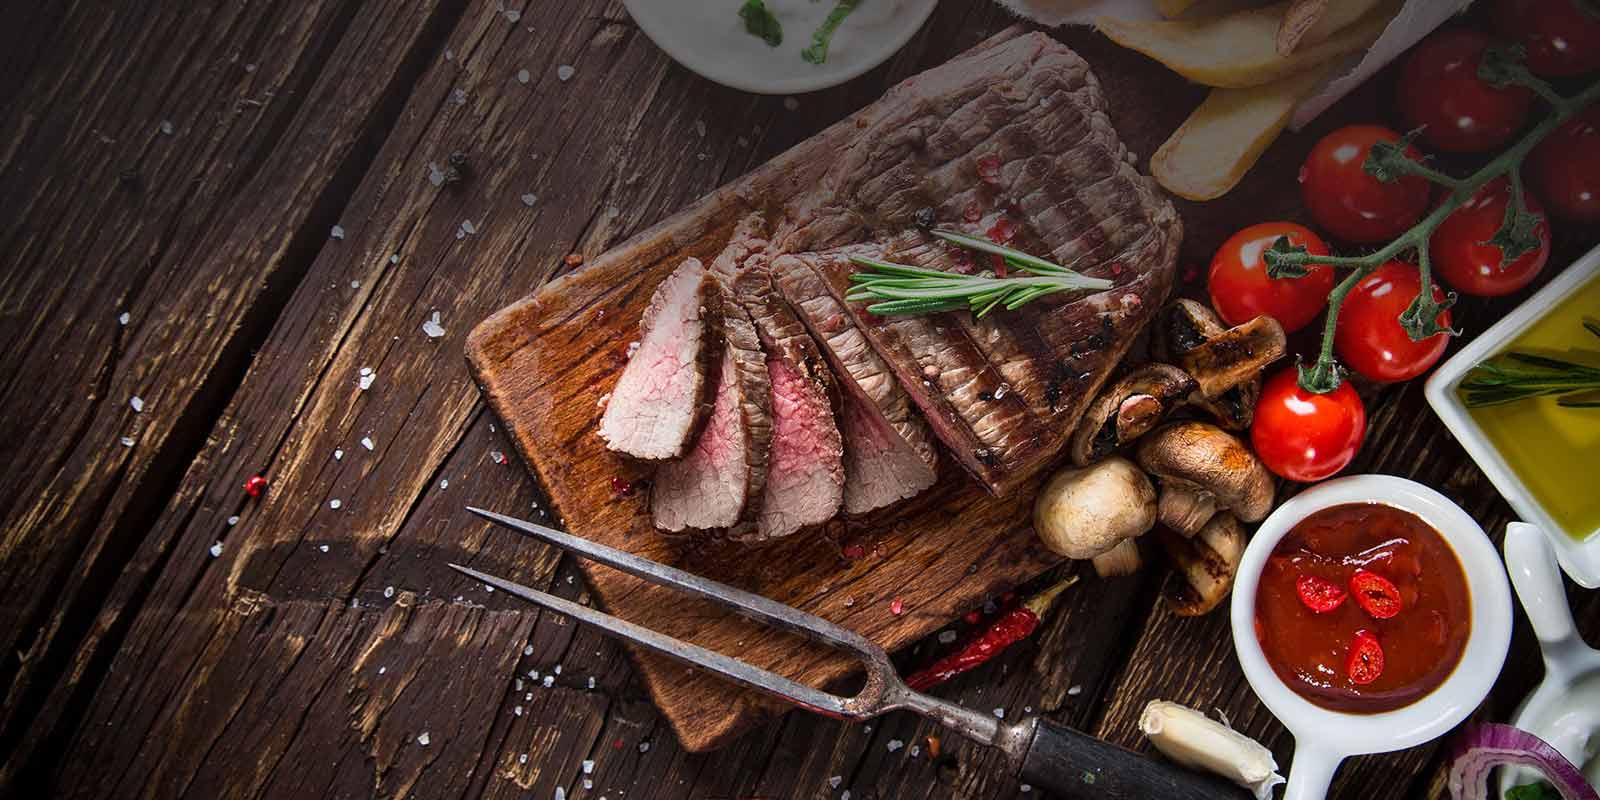 Greenlea meso sa Novog Zelanda Greenlea se ponosi proizvodnjom najbolje govedine koja je 100% hranjena travom.